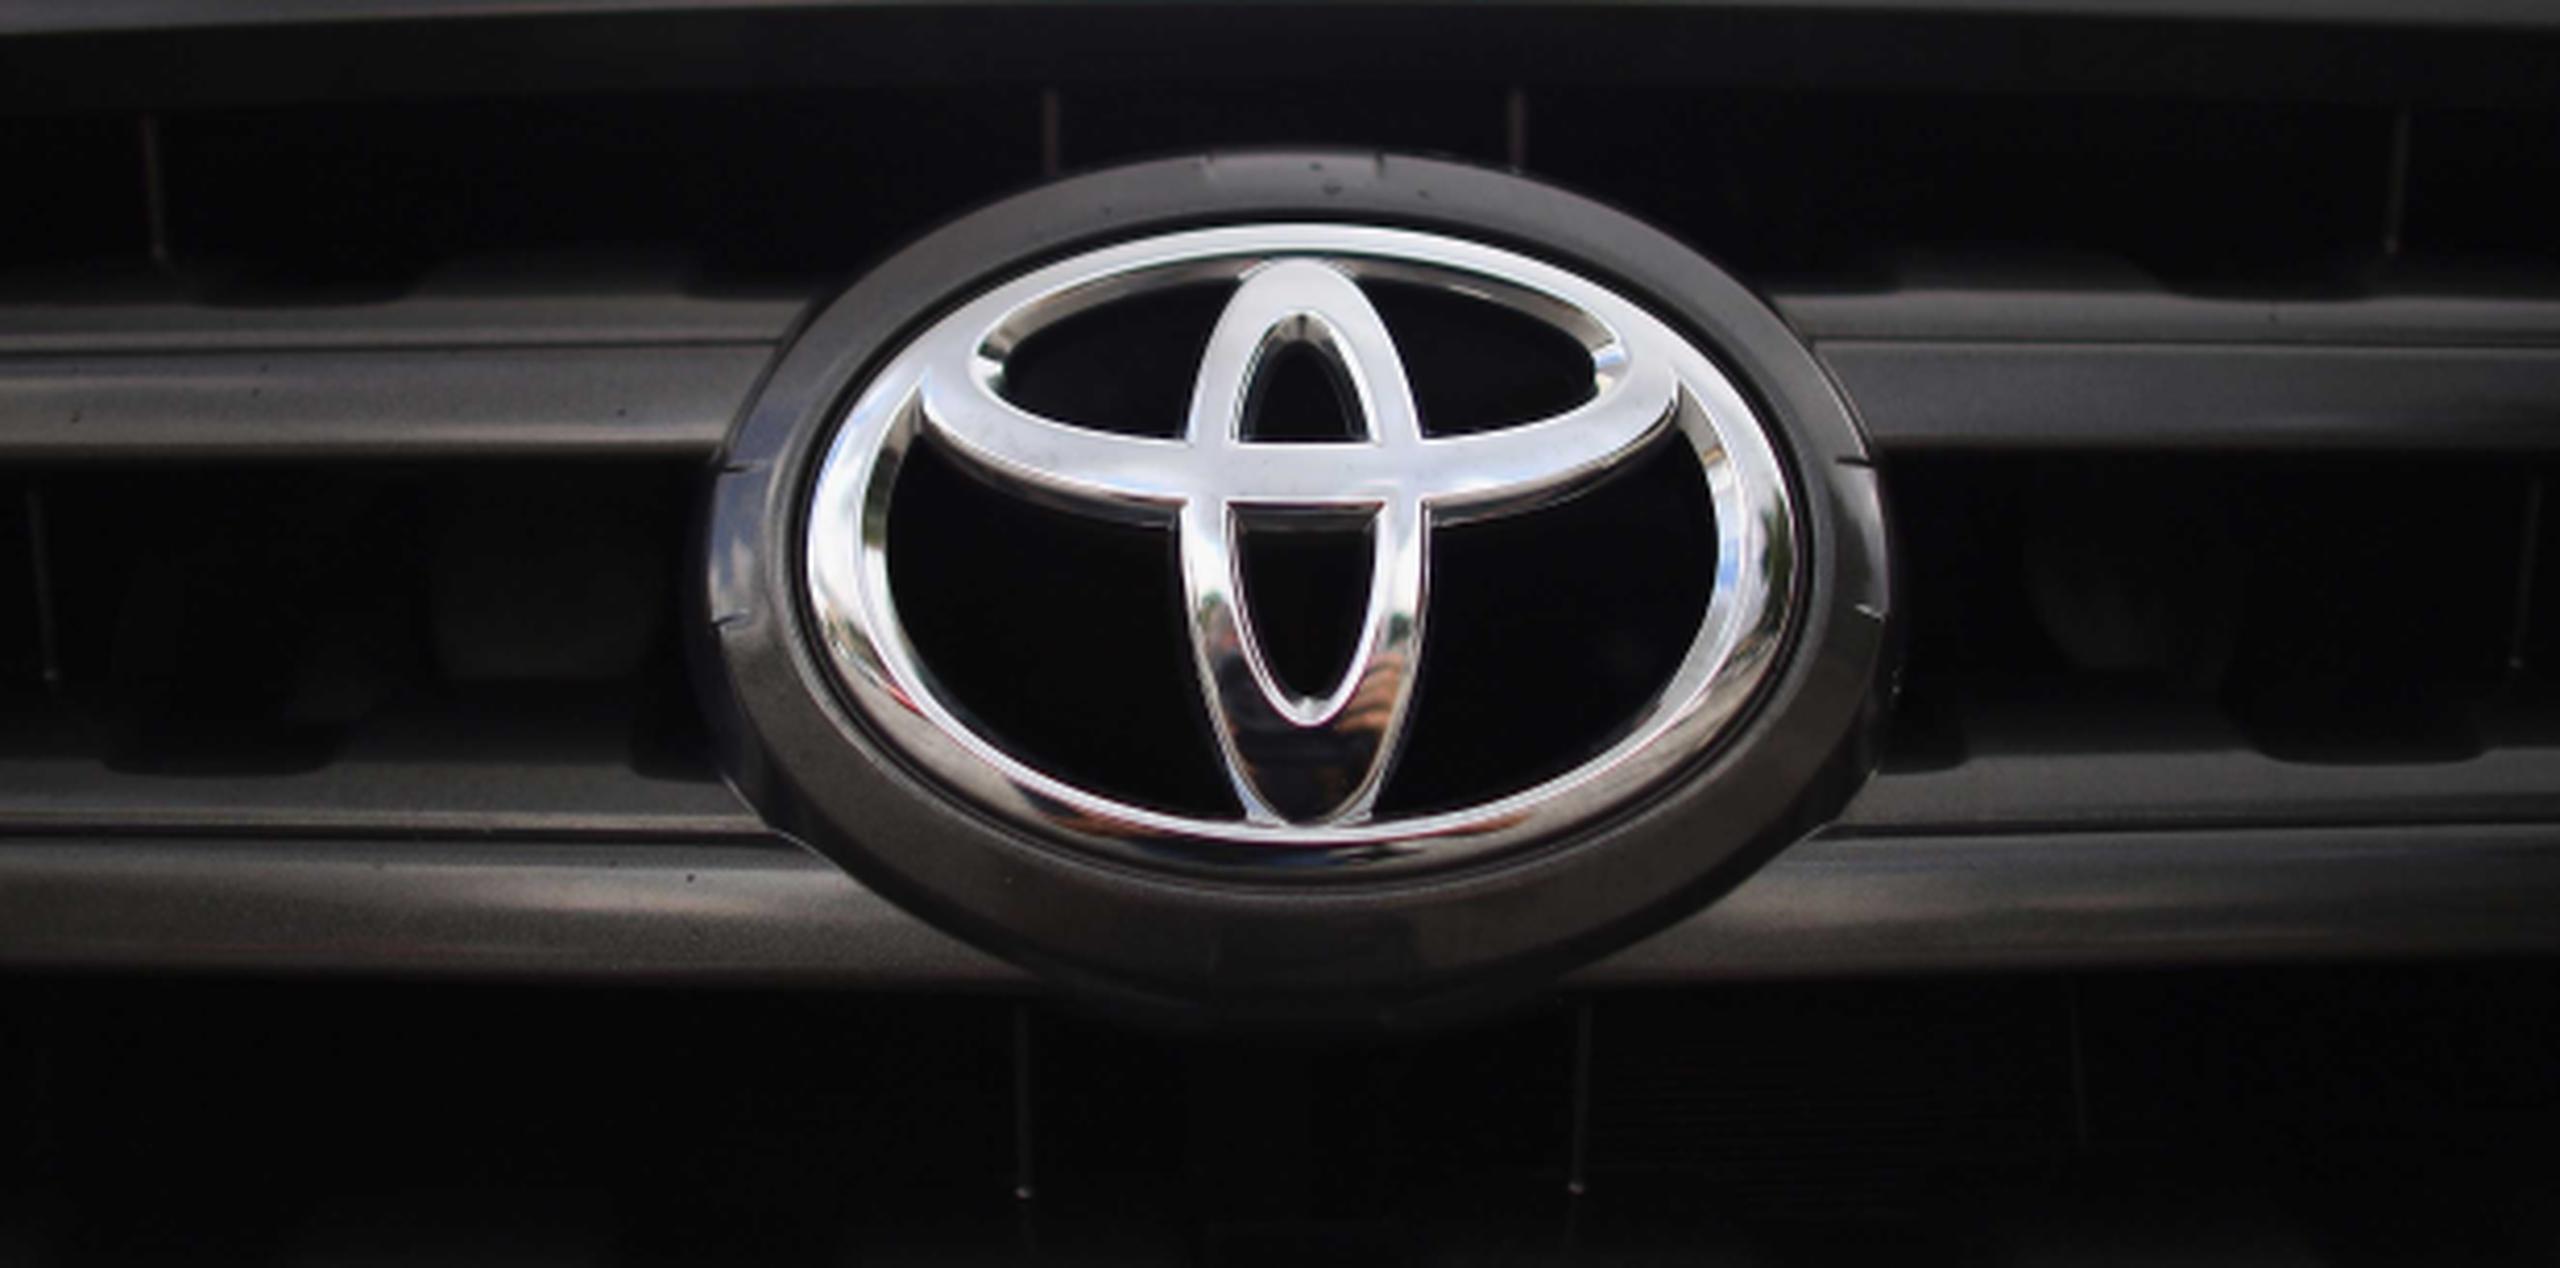 Toyota señaló que desconoce si ha habido accidentes o lesiones a causa del problema. (Archivo)